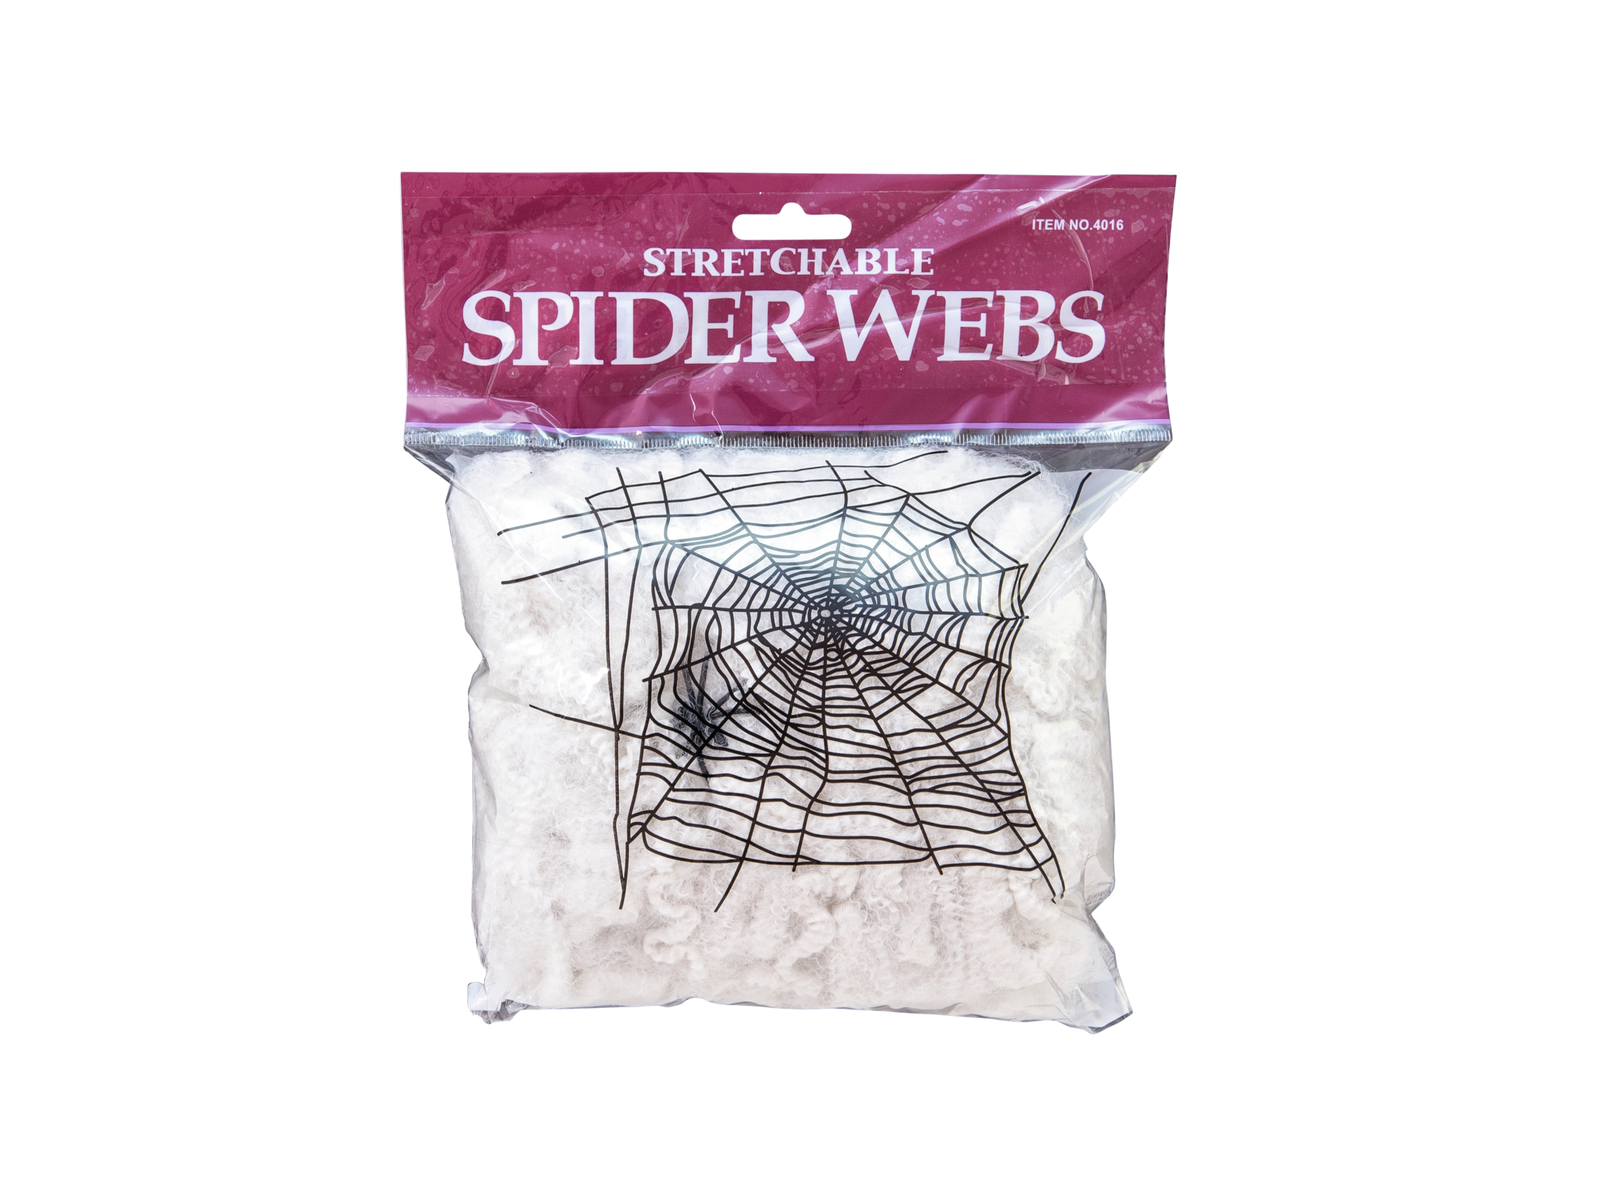 Halloween pavučina, 50 g, UV aktivní bílá